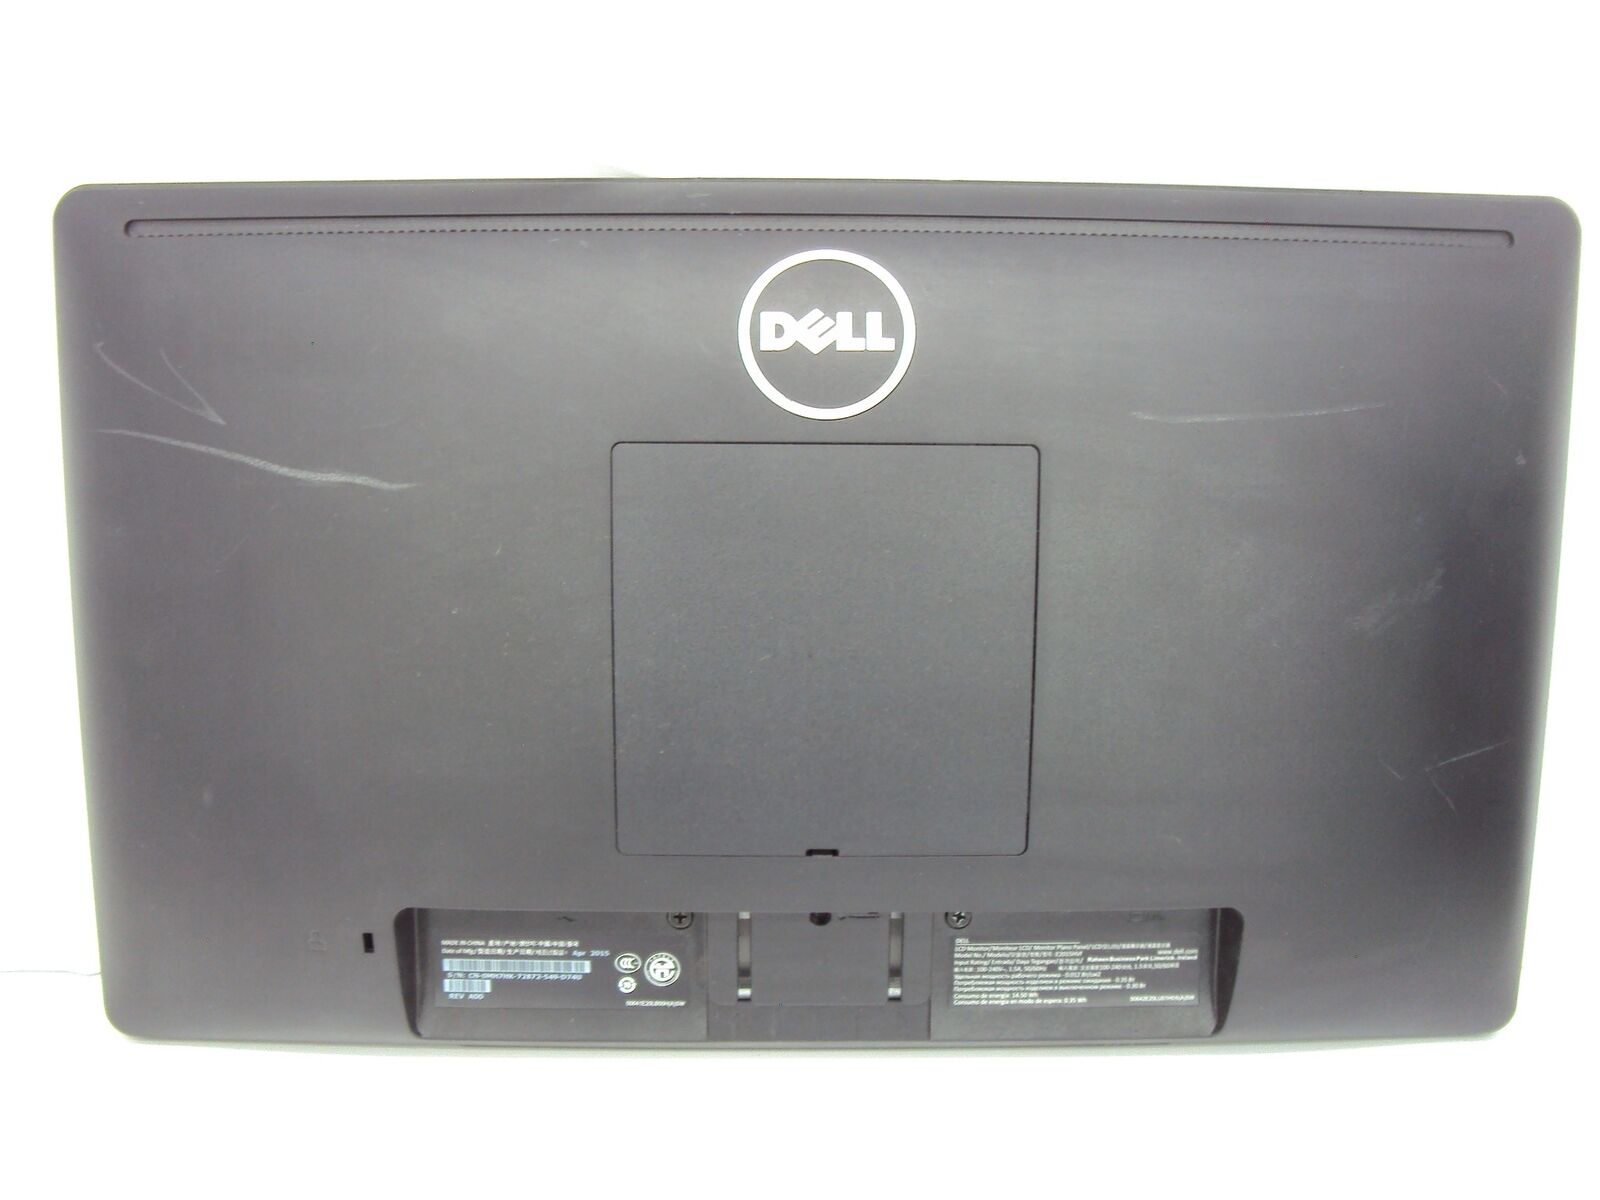 Lot of 2 Dell E2015HVF 20" Dual Computer Monitor 1600 x 900 VGA No Stand Dell - фотография #4